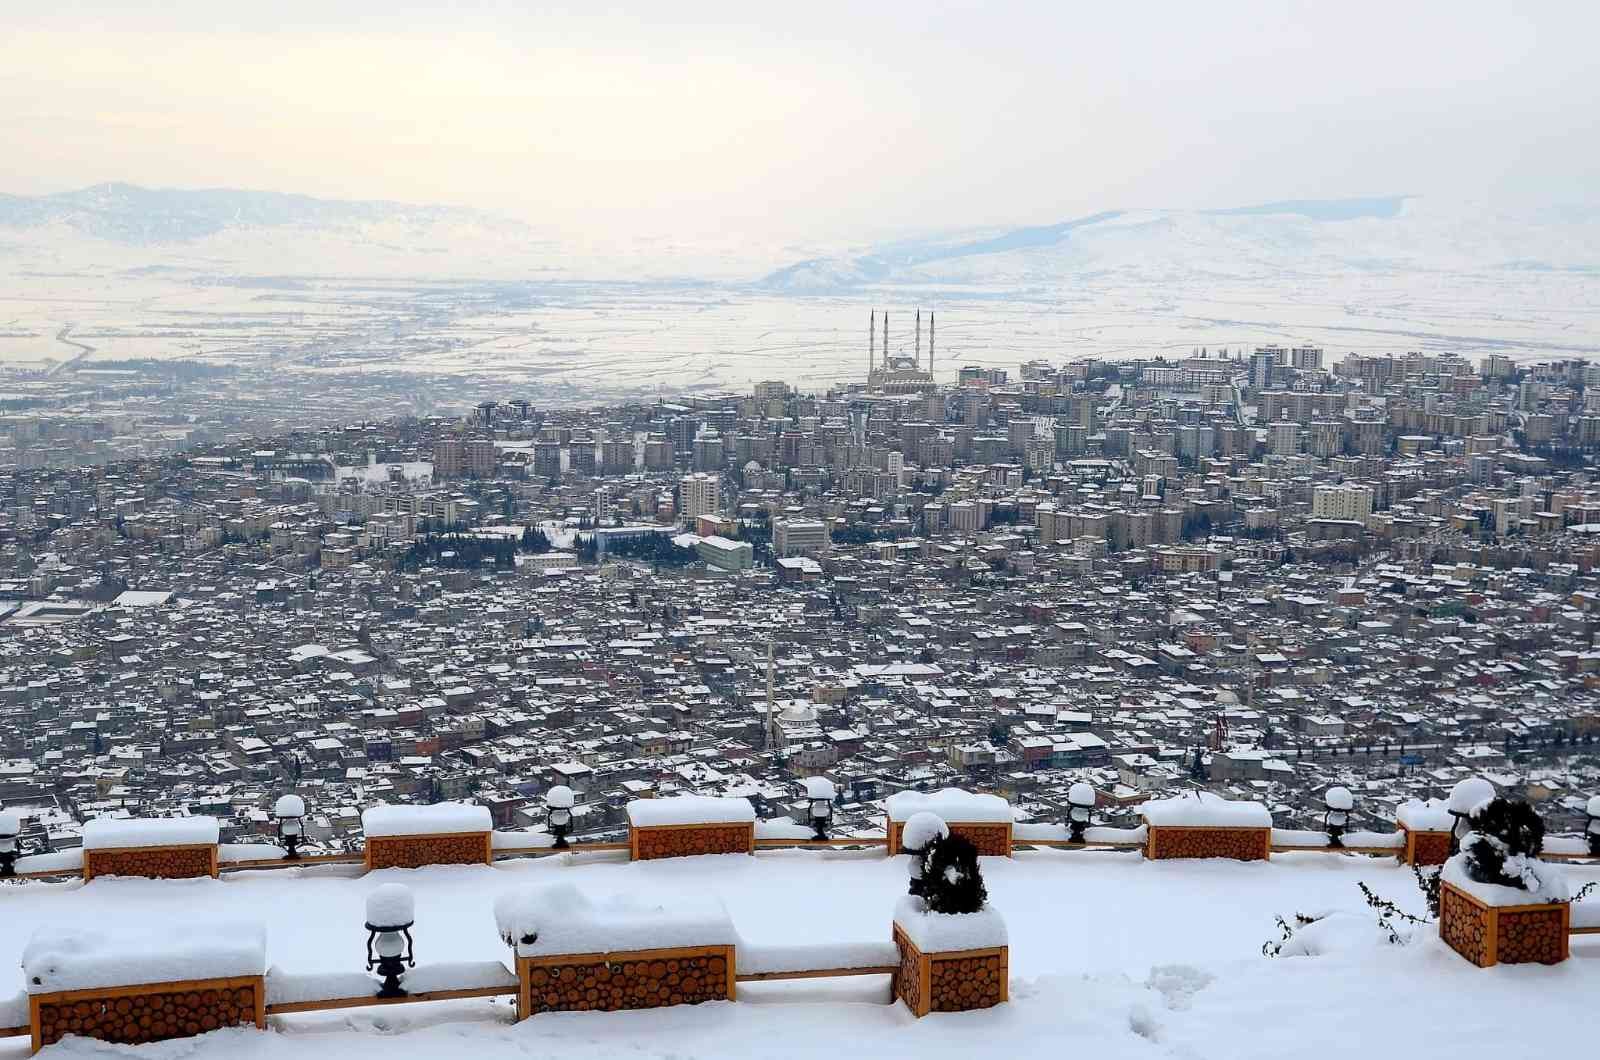 Kahramanmaraş’ta kar kartpostallık görüntüler ortaya çıkardı #kahramanmaras